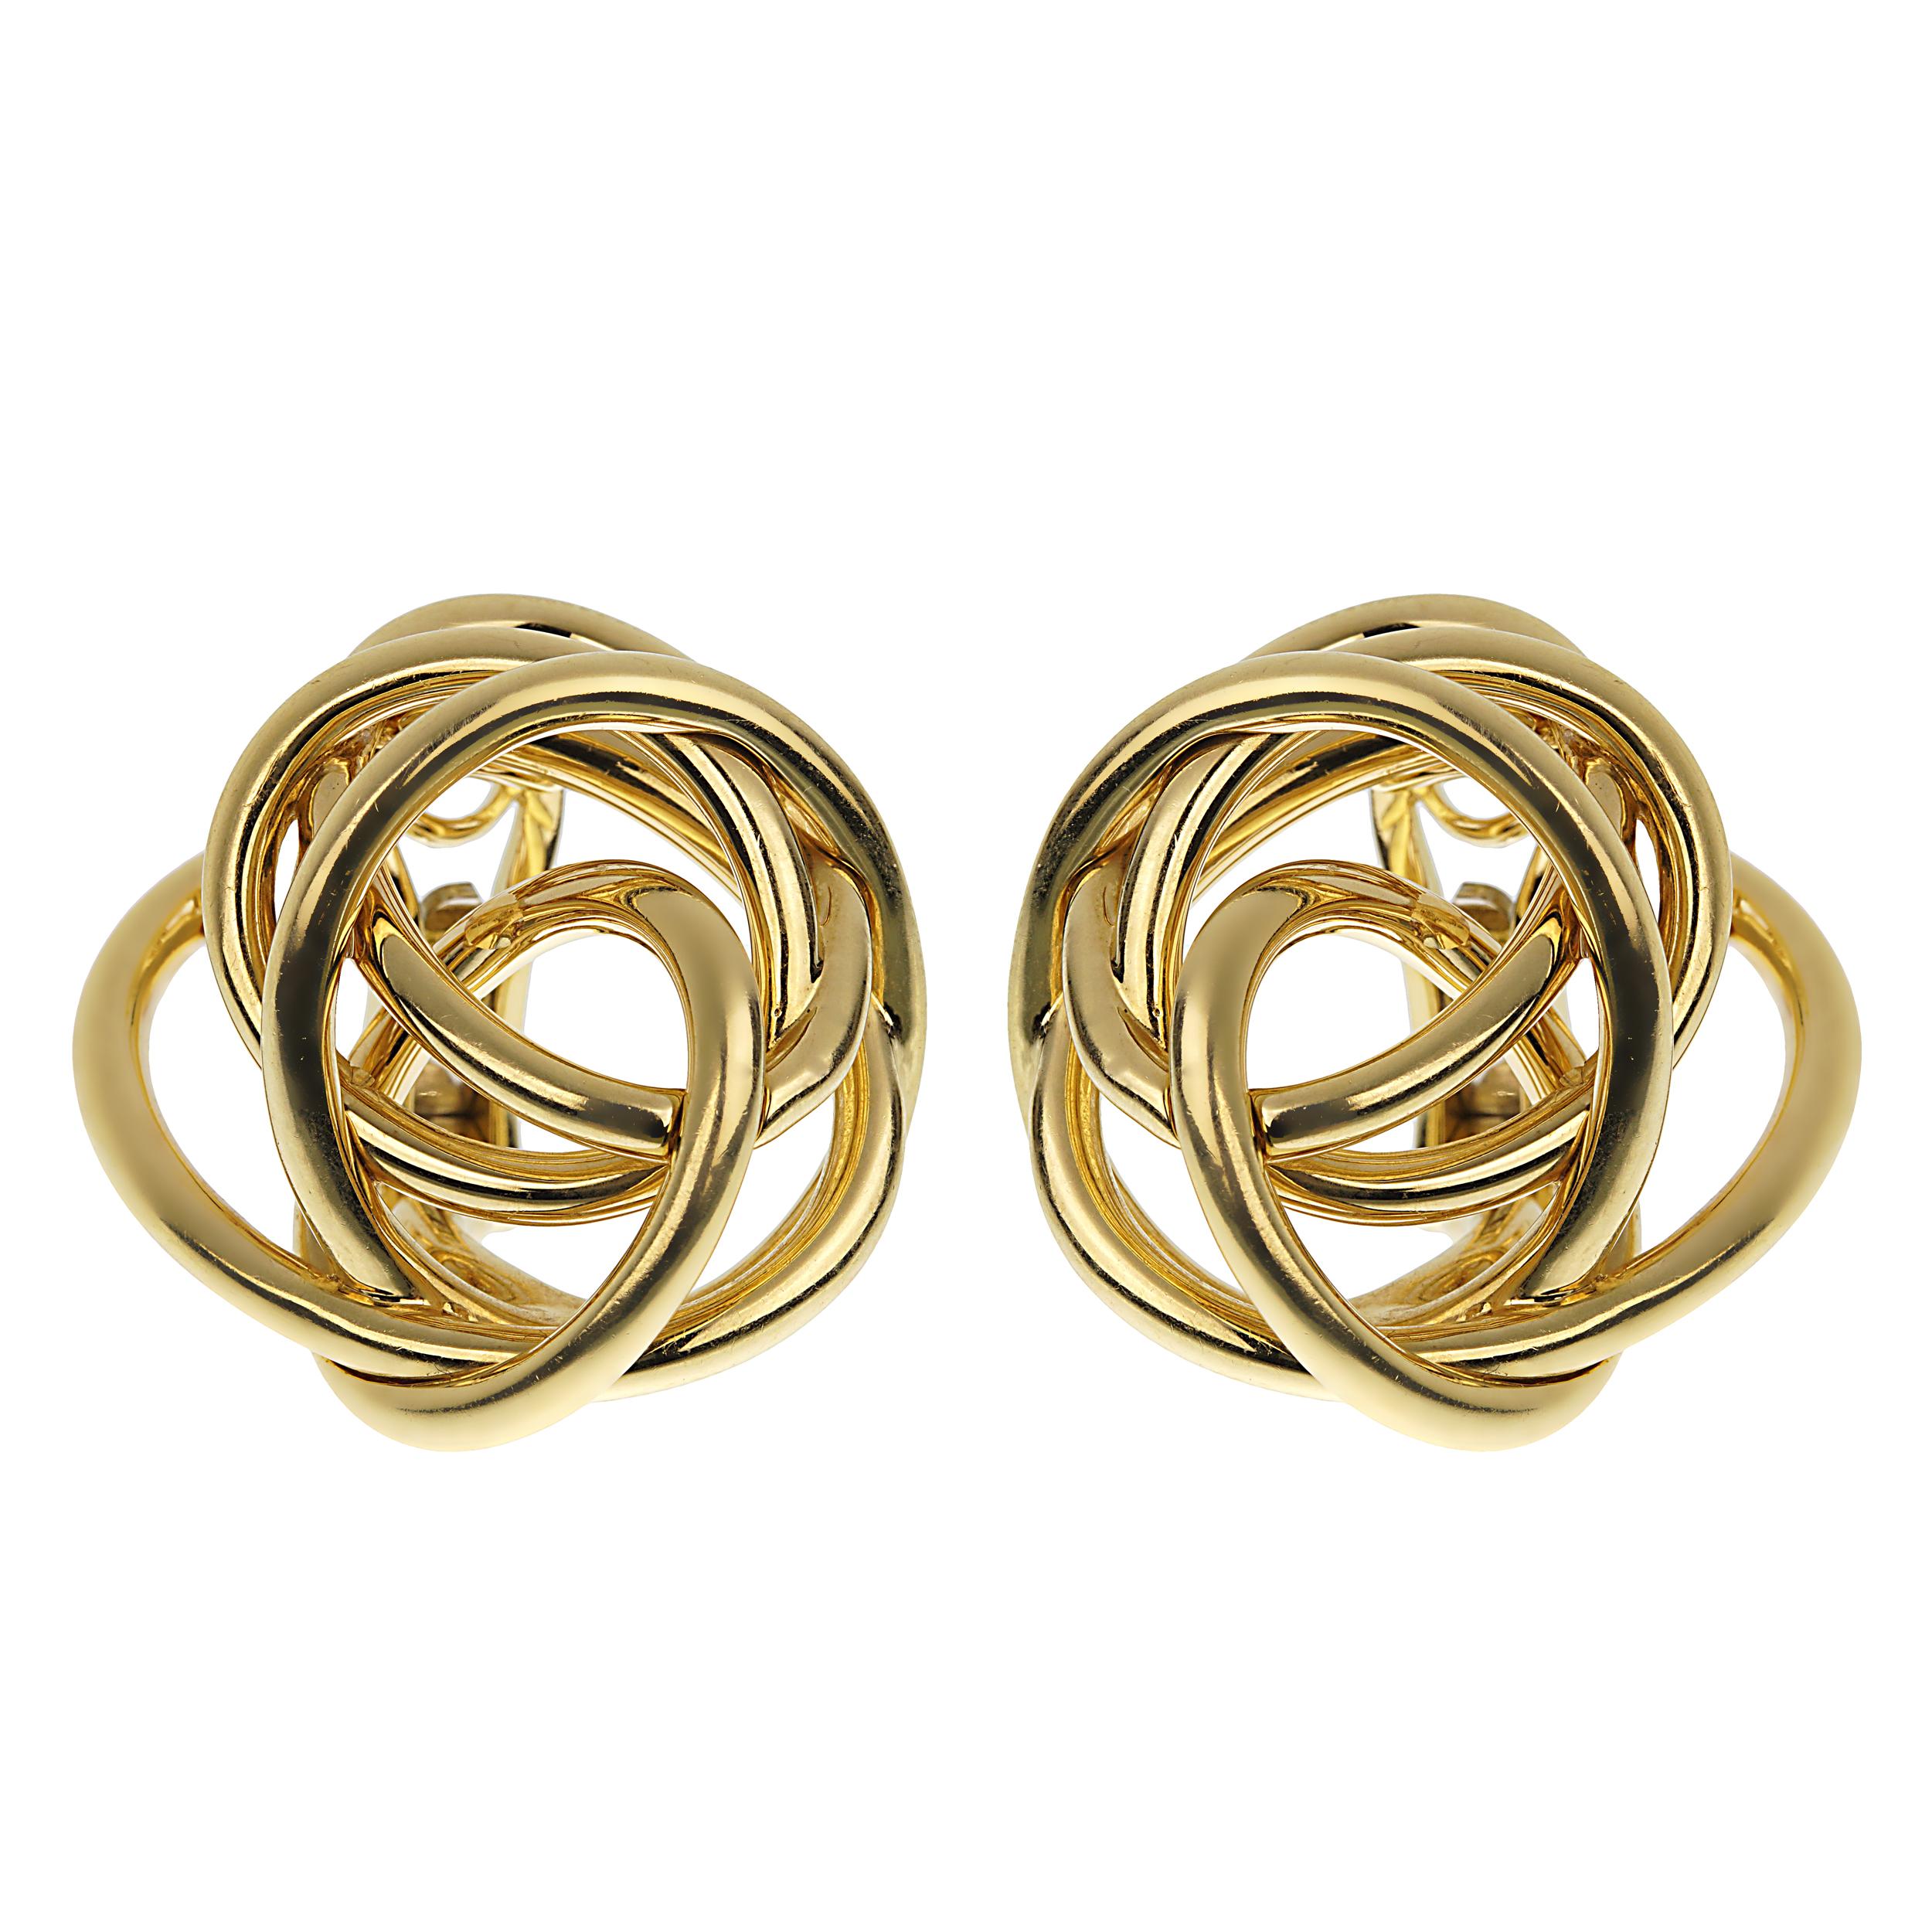 In der Welt des hochwertigen Schmucks gibt es nur wenige Stücke, die die Essenz von zeitloser Eleganz und innovativem Design so gut einfangen wie die De Grisogono Matassa-Ohrringe aus 18 Karat Gelbgold. 